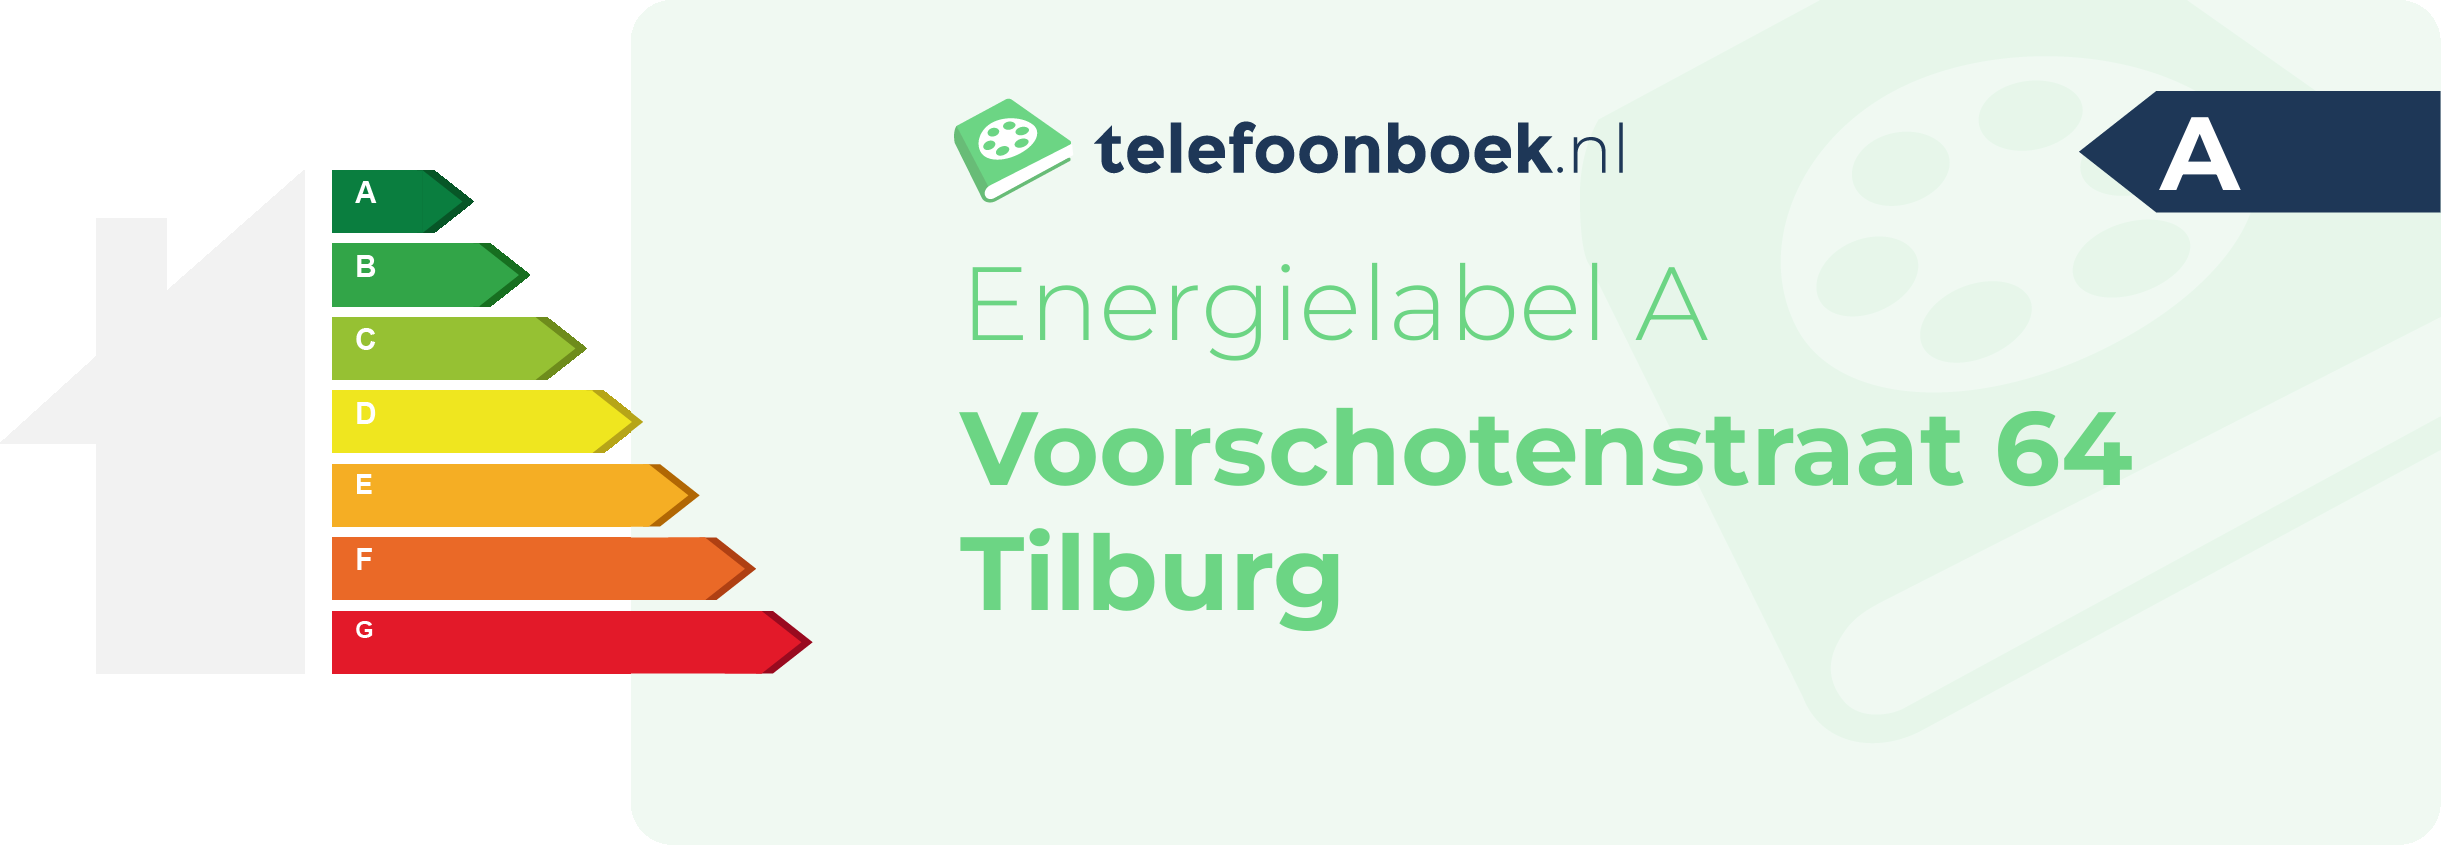 Energielabel Voorschotenstraat 64 Tilburg